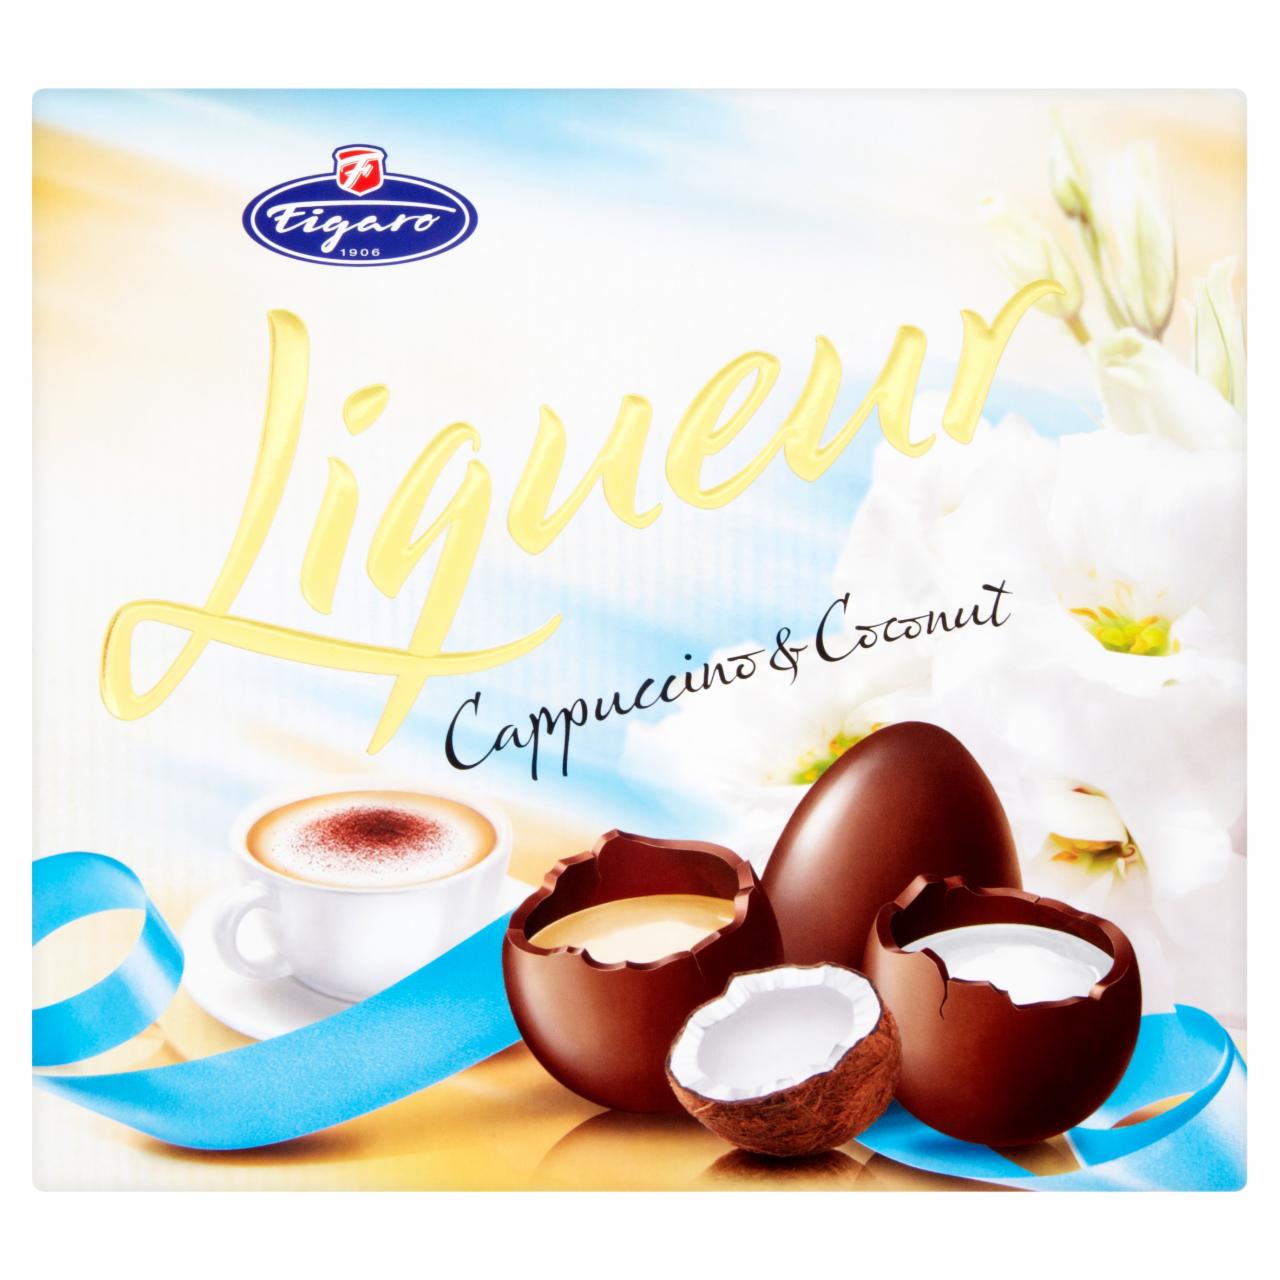 Képek - Figaro kókuszlikőr ízű krémmel töltött ét- és cappuccinolikőr ízű krémmel töltött tejcsokoládé 220 g